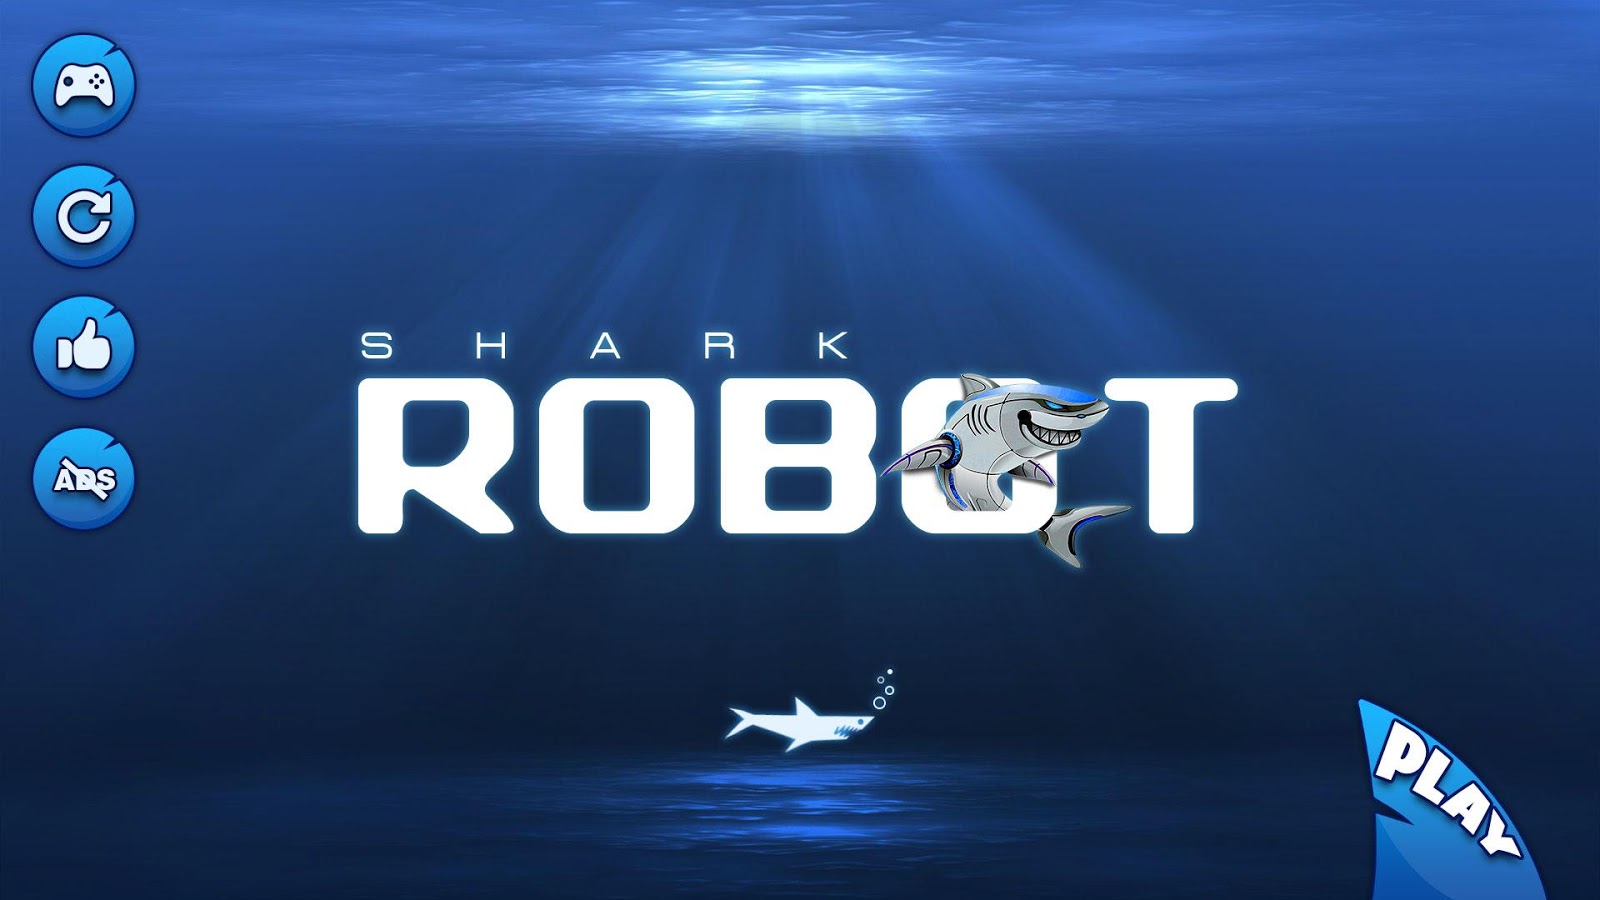 特警 机器人 鲨鱼 演变 战争 - 鲨鱼 罐 游戏截图5